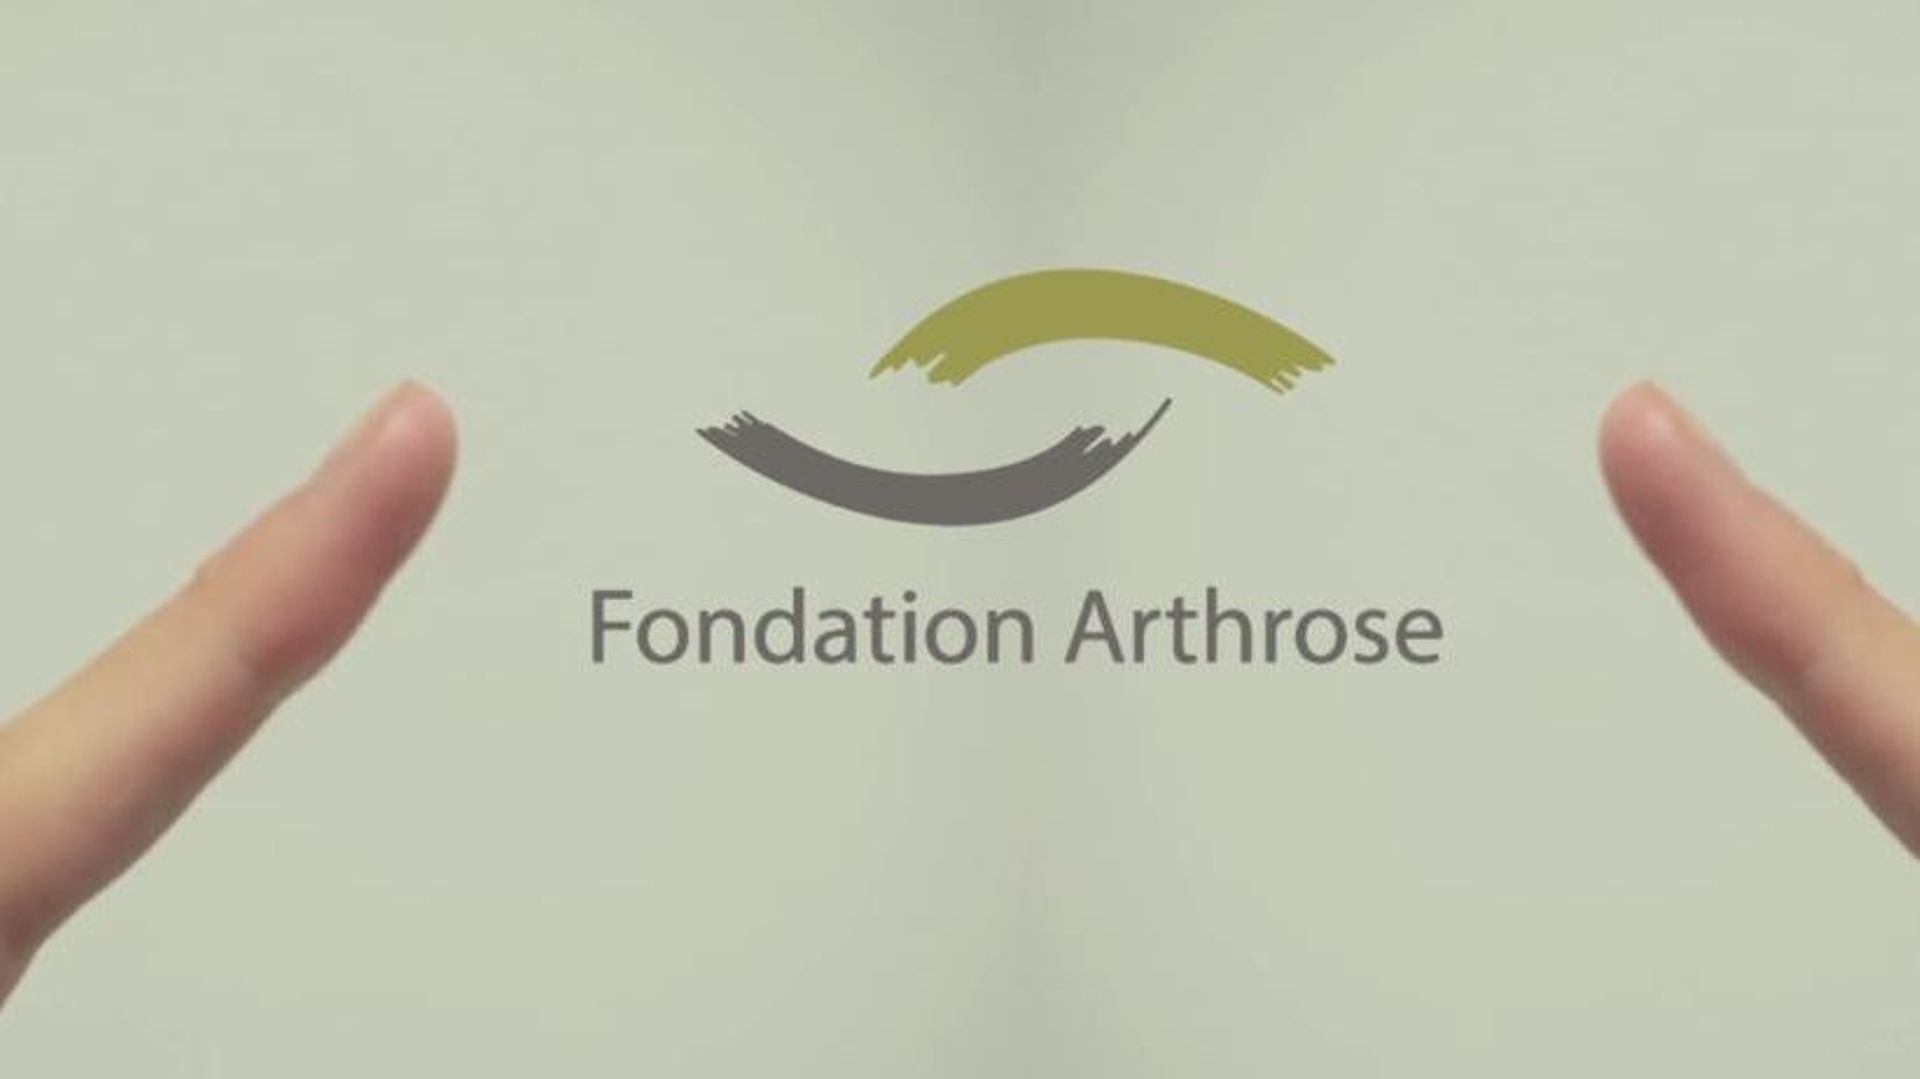 Comment lutter contre l'arthrose ? Une fondation exclusivement dédiée voit le jour à l'ULg